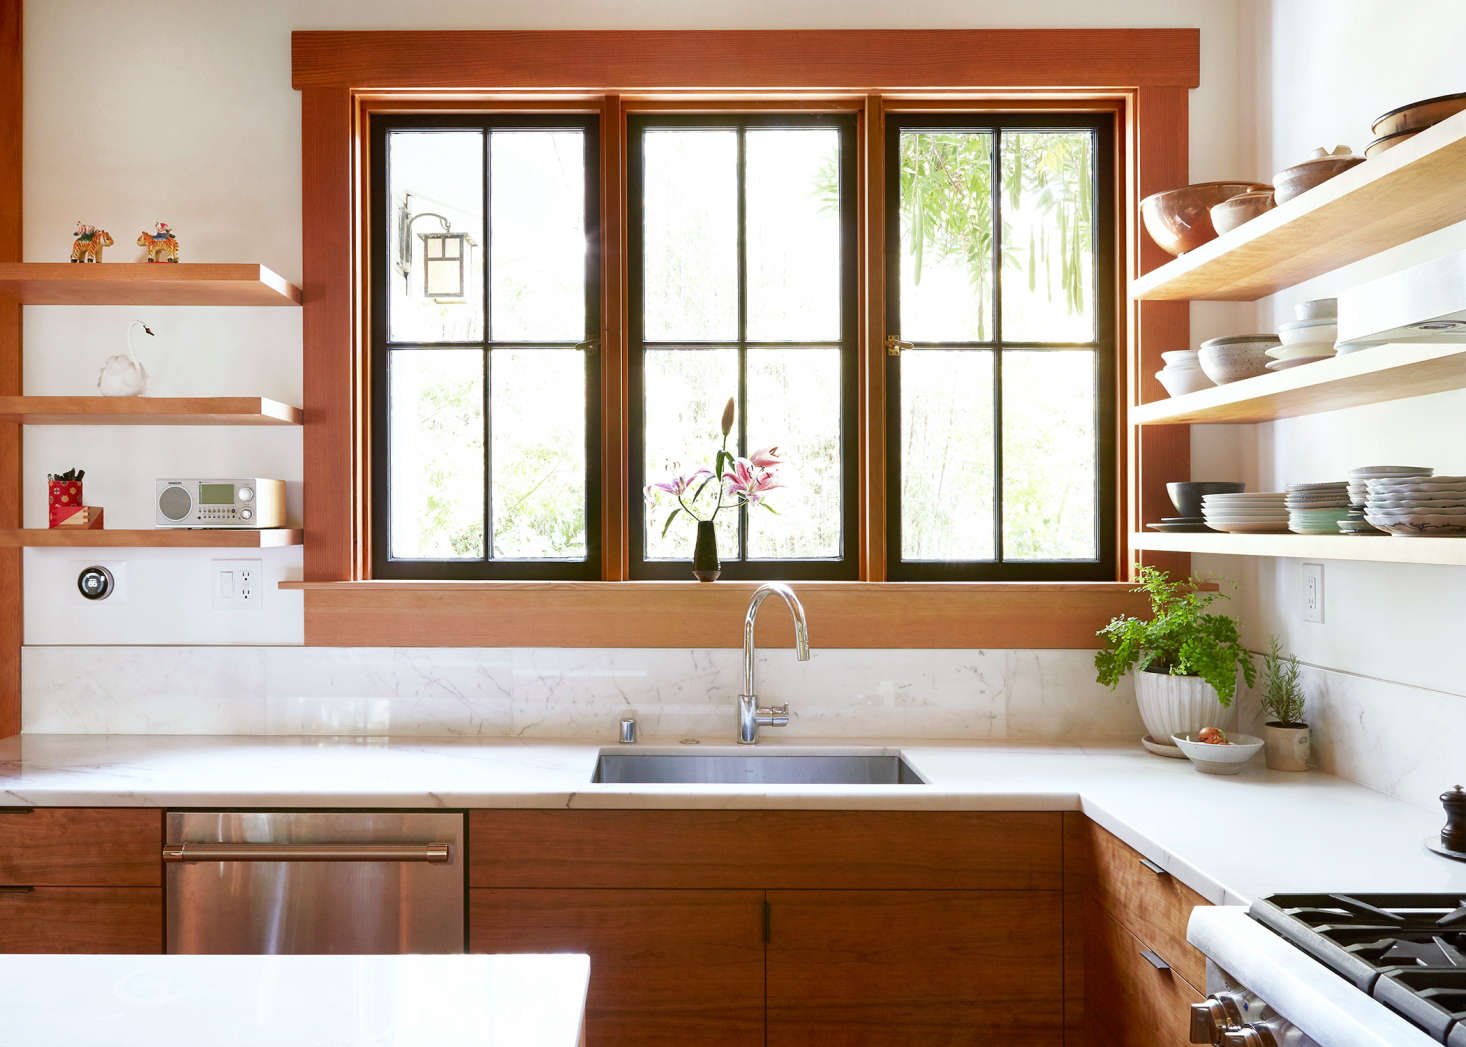 Раковина у окна на кухне в доме фото дизайн